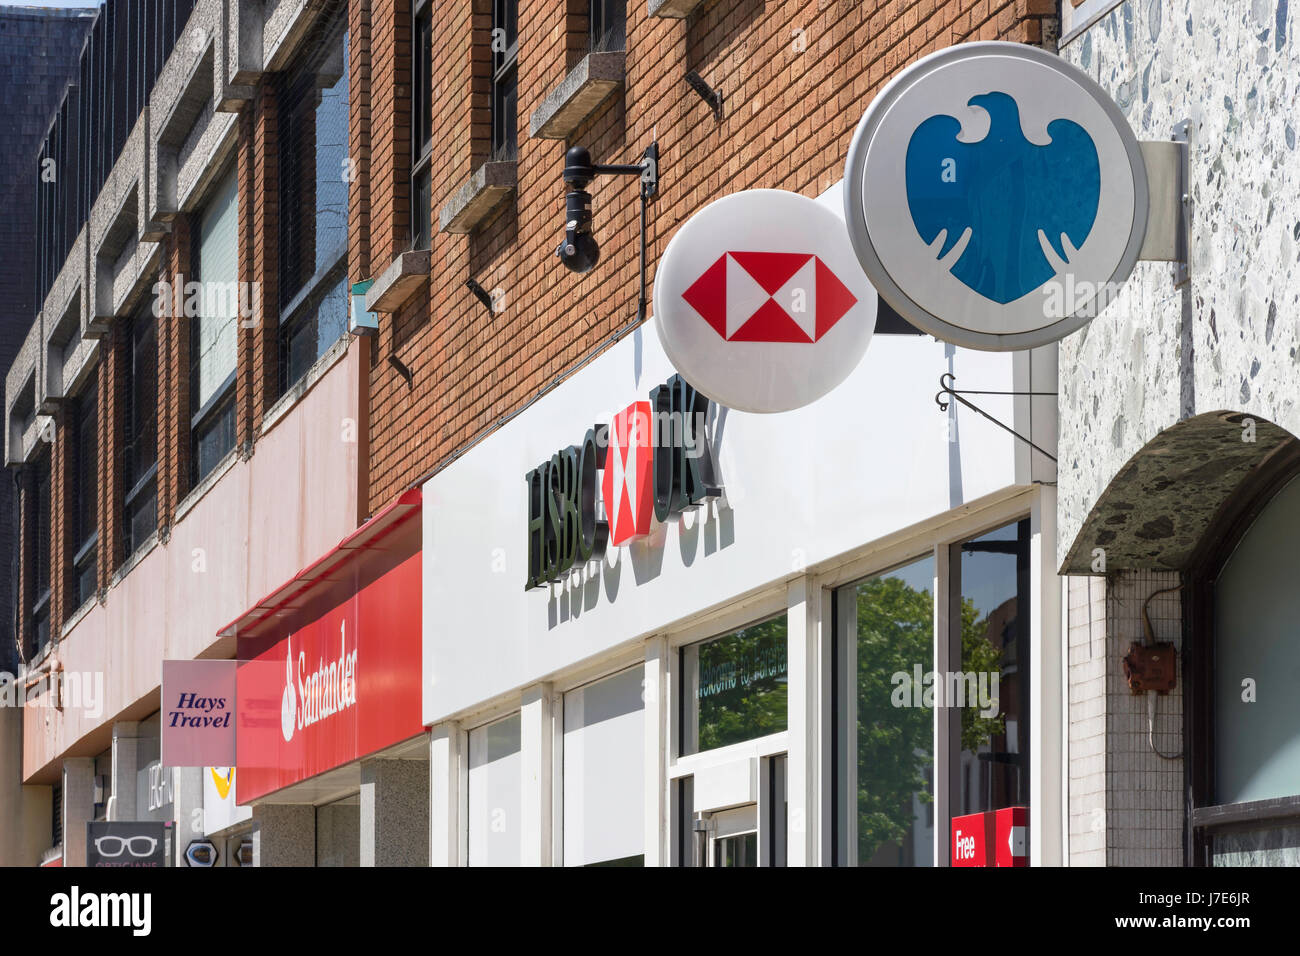 Rangée de High Street les banques de détail (Santander, HSBC et Barclays), West Street, Fareham, Hampshire, Angleterre, Royaume-Uni Banque D'Images